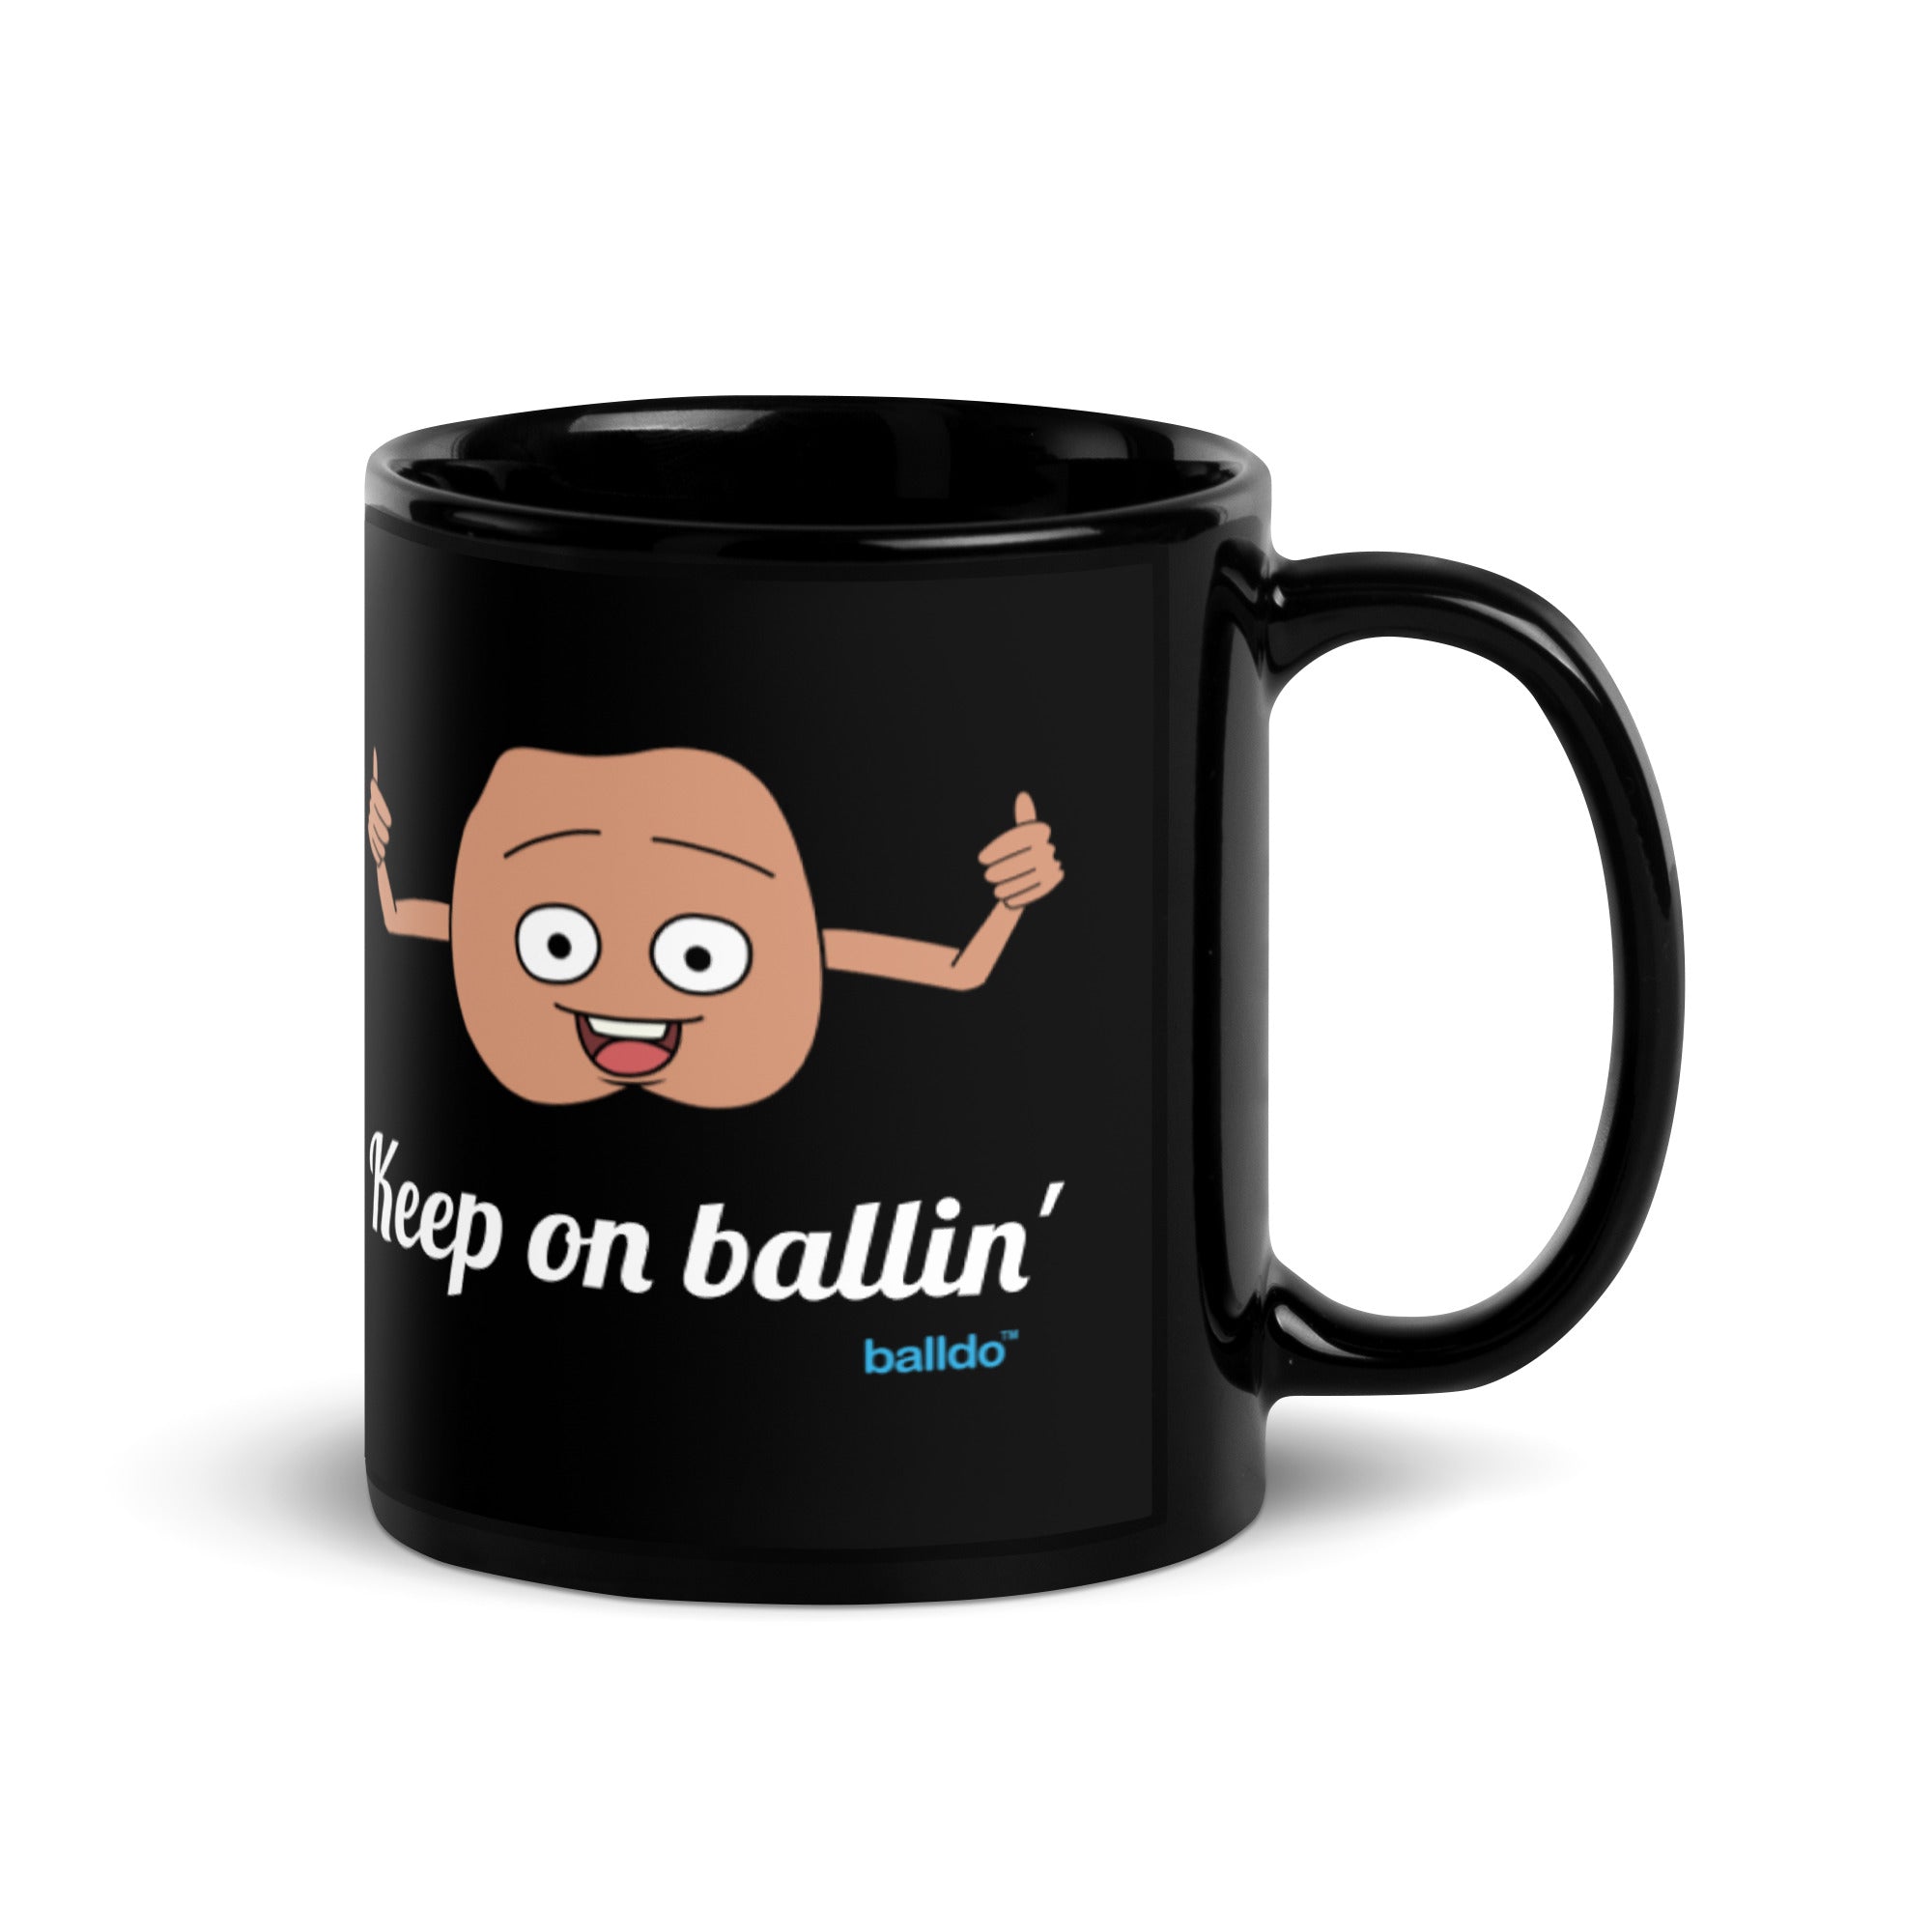 Keep on ballin' - Chuck the Balls mug - 11oz/300ml